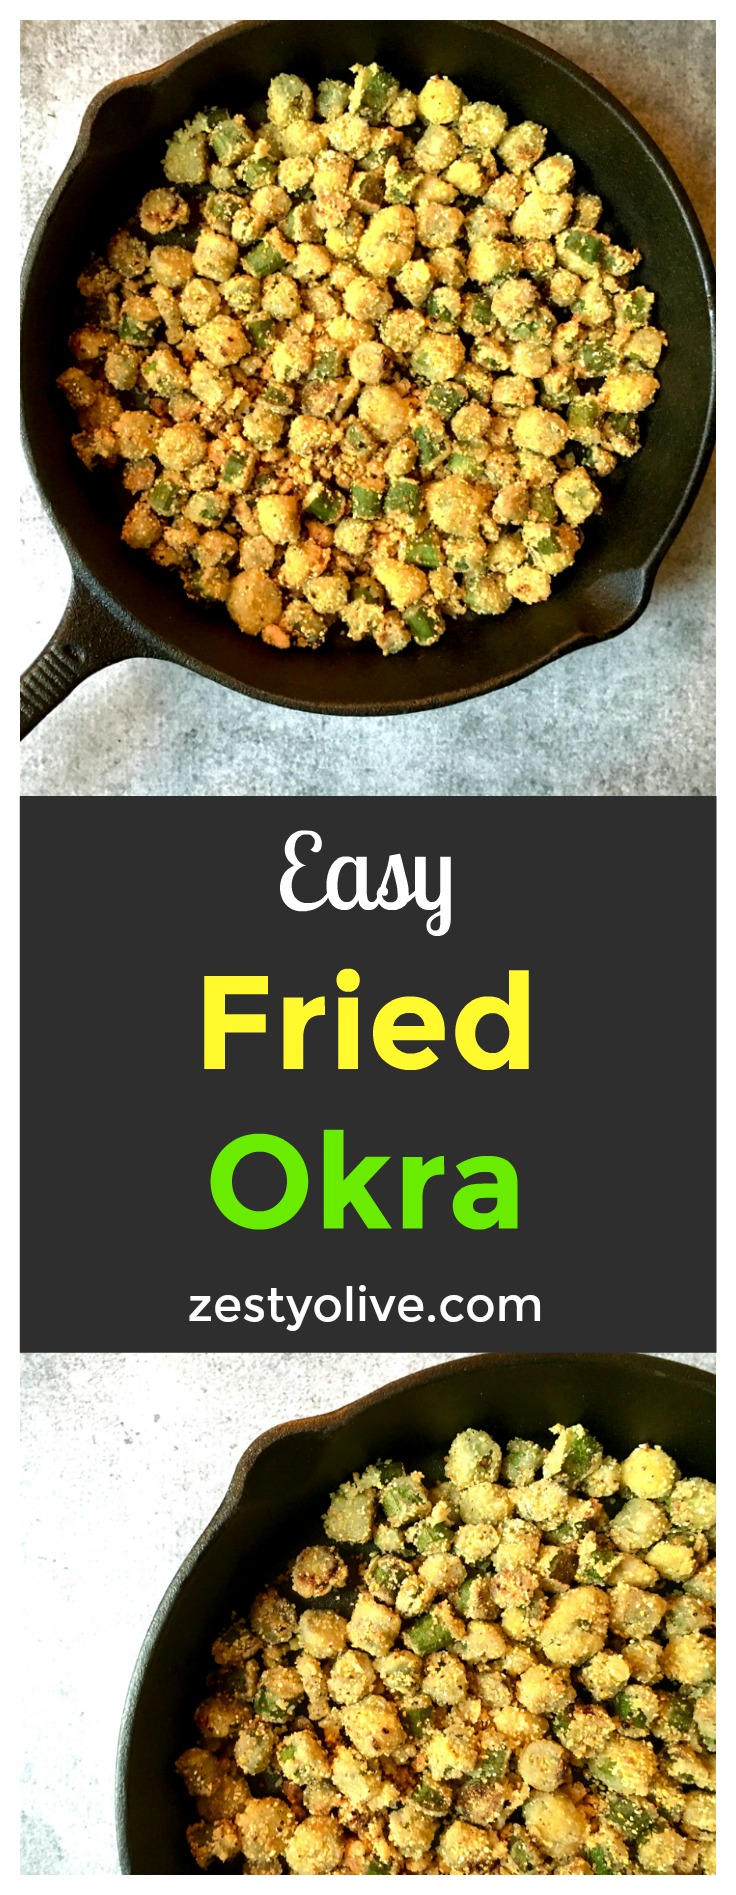 Easy Fried Okra Recipe